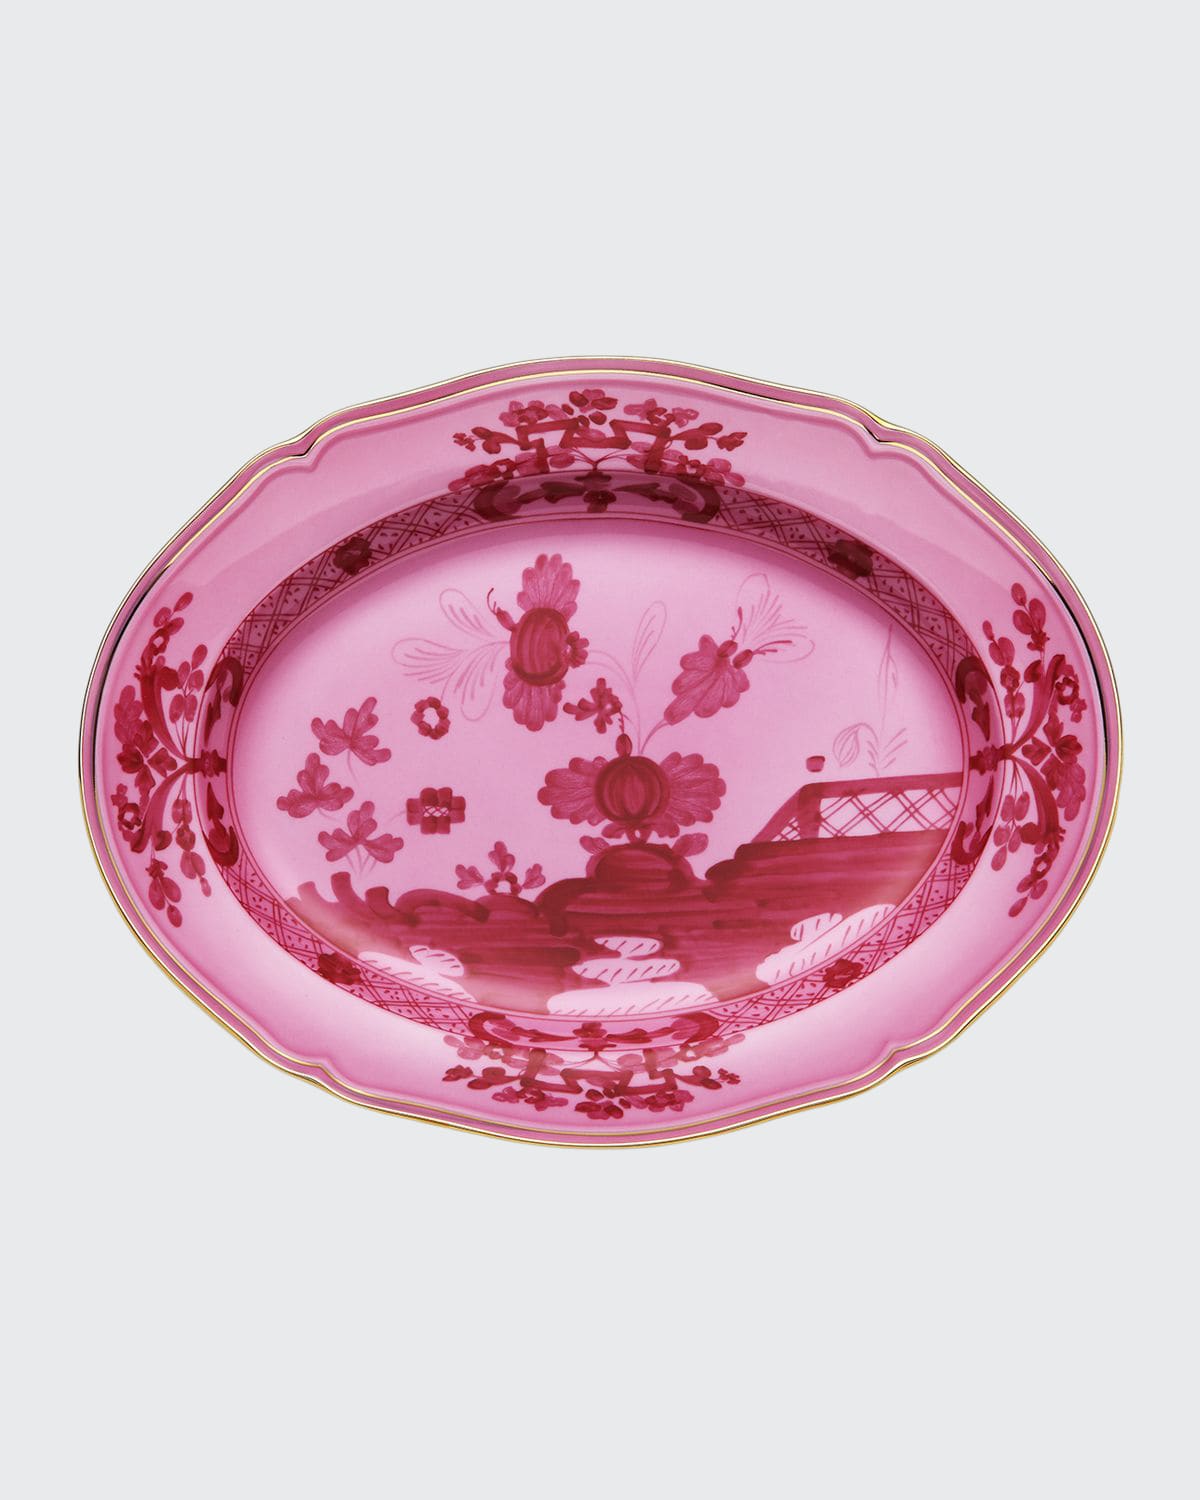 Ginori 1735 Oriente Italiano Oval Platter, Porpora